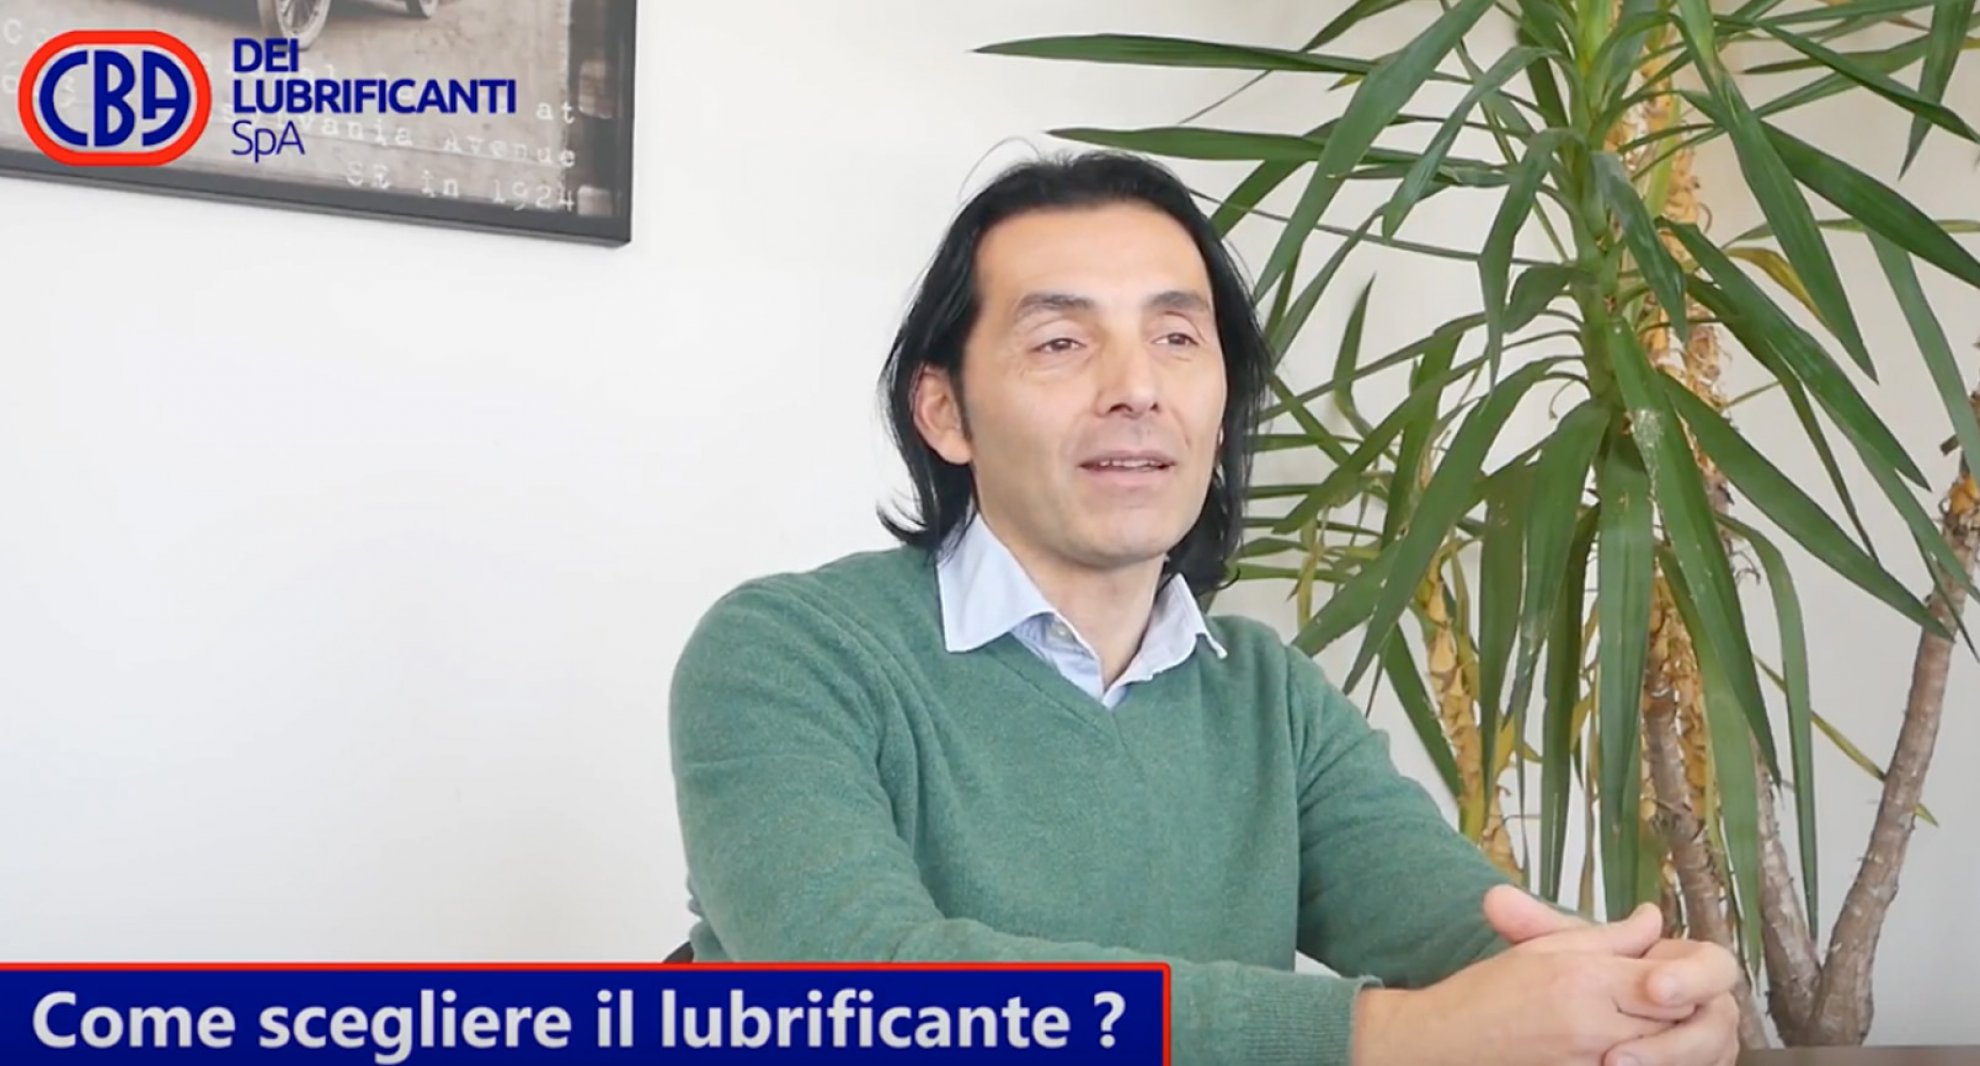 Gerardo D'Elia: come scegliere il lubrificante